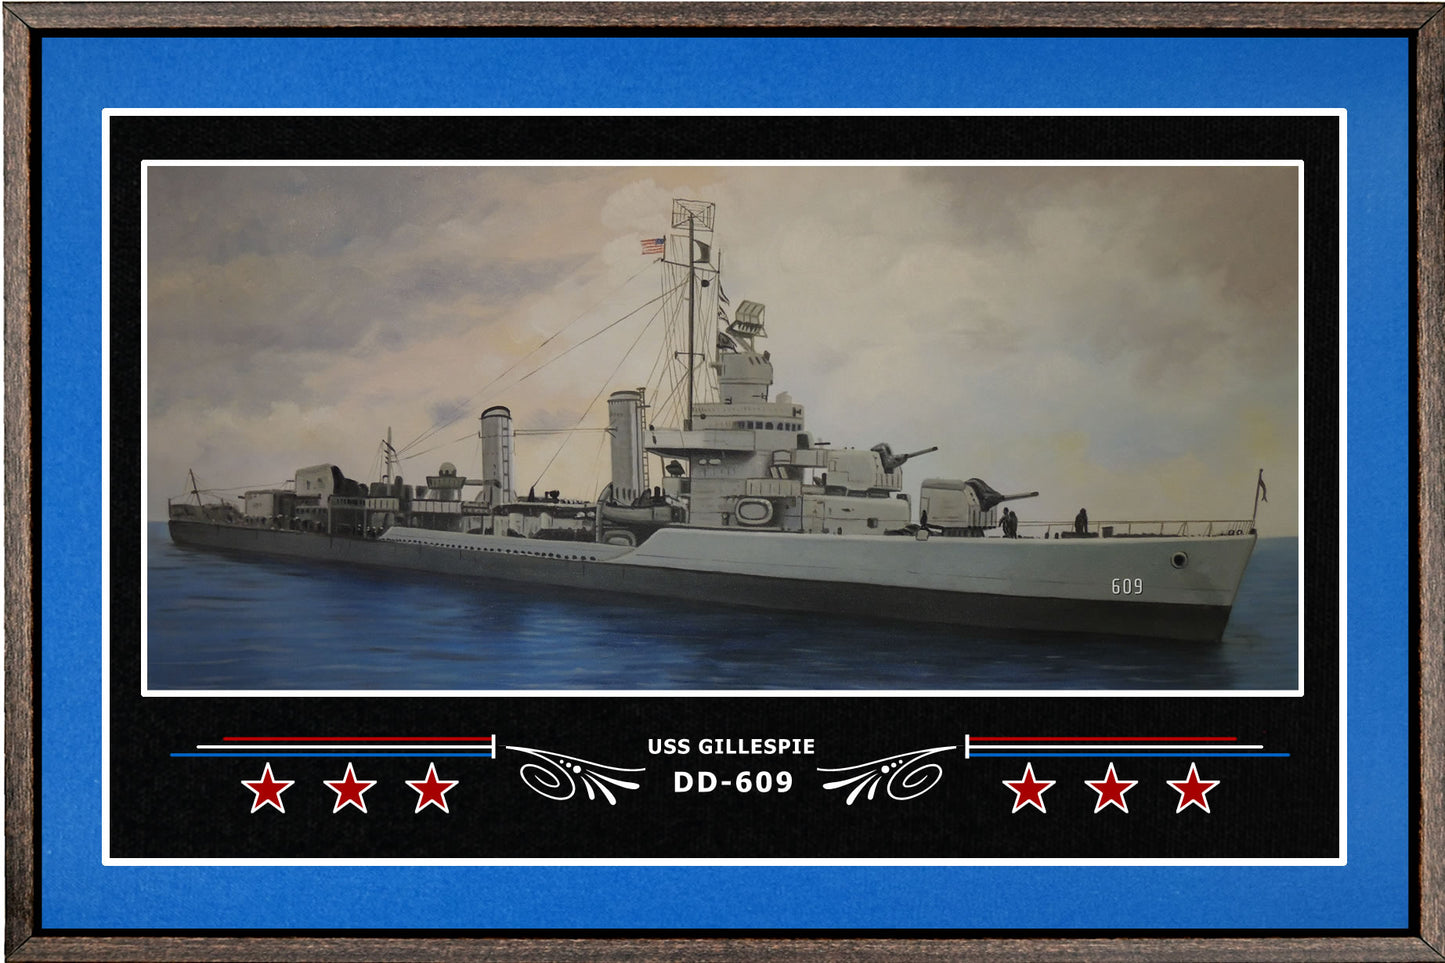 USS GILLESPIE DD 609 BOX FRAMED CANVAS ART BLUE